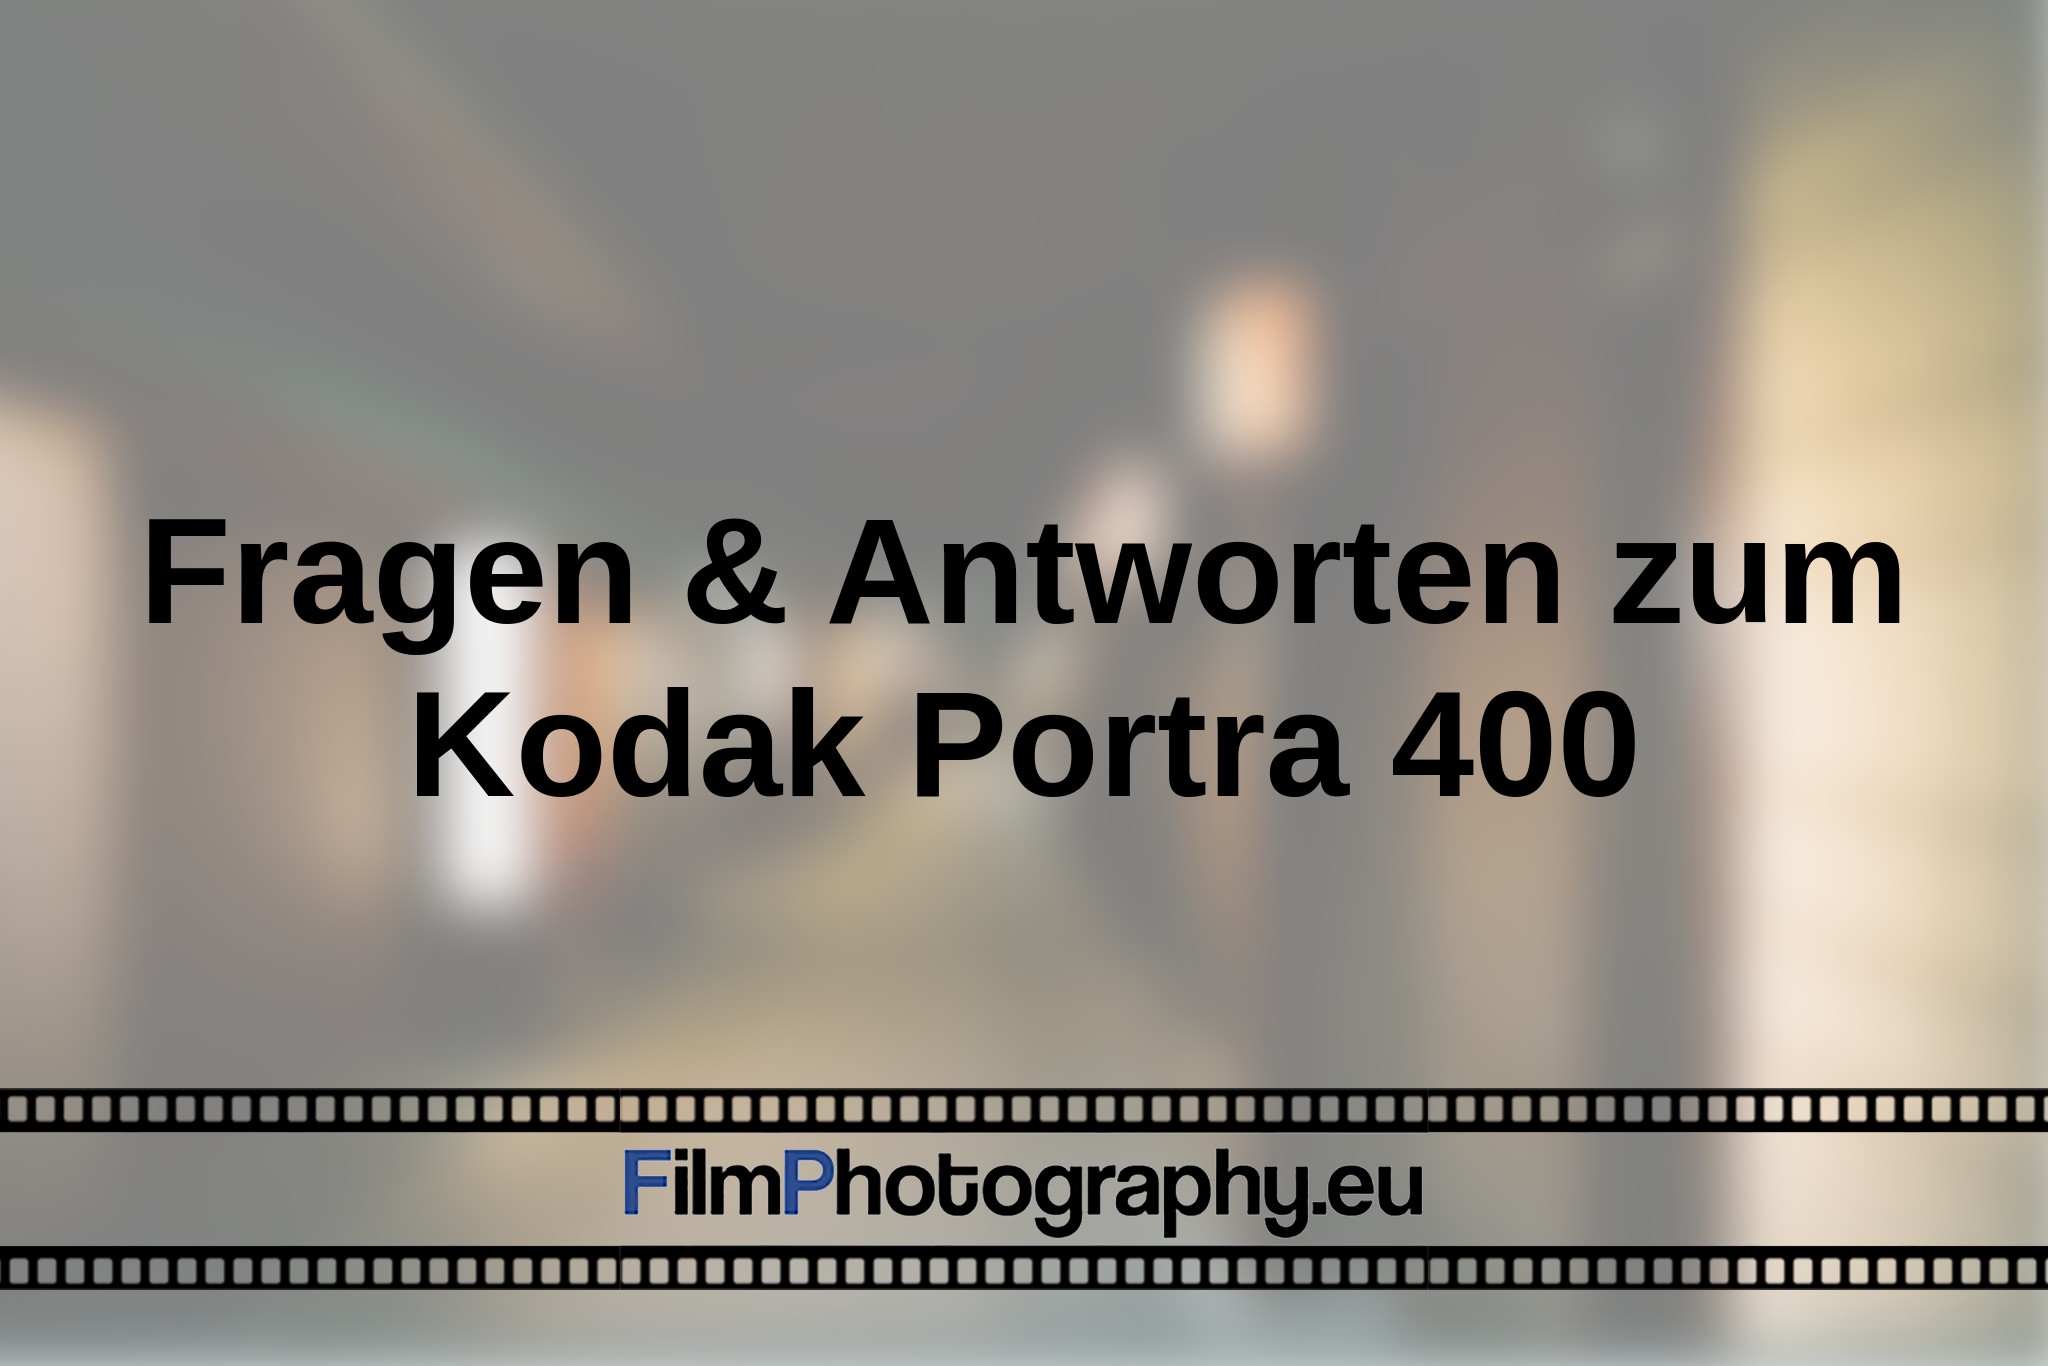 fragen-antworten-zum-kodak-portra-400--bnv.jpg